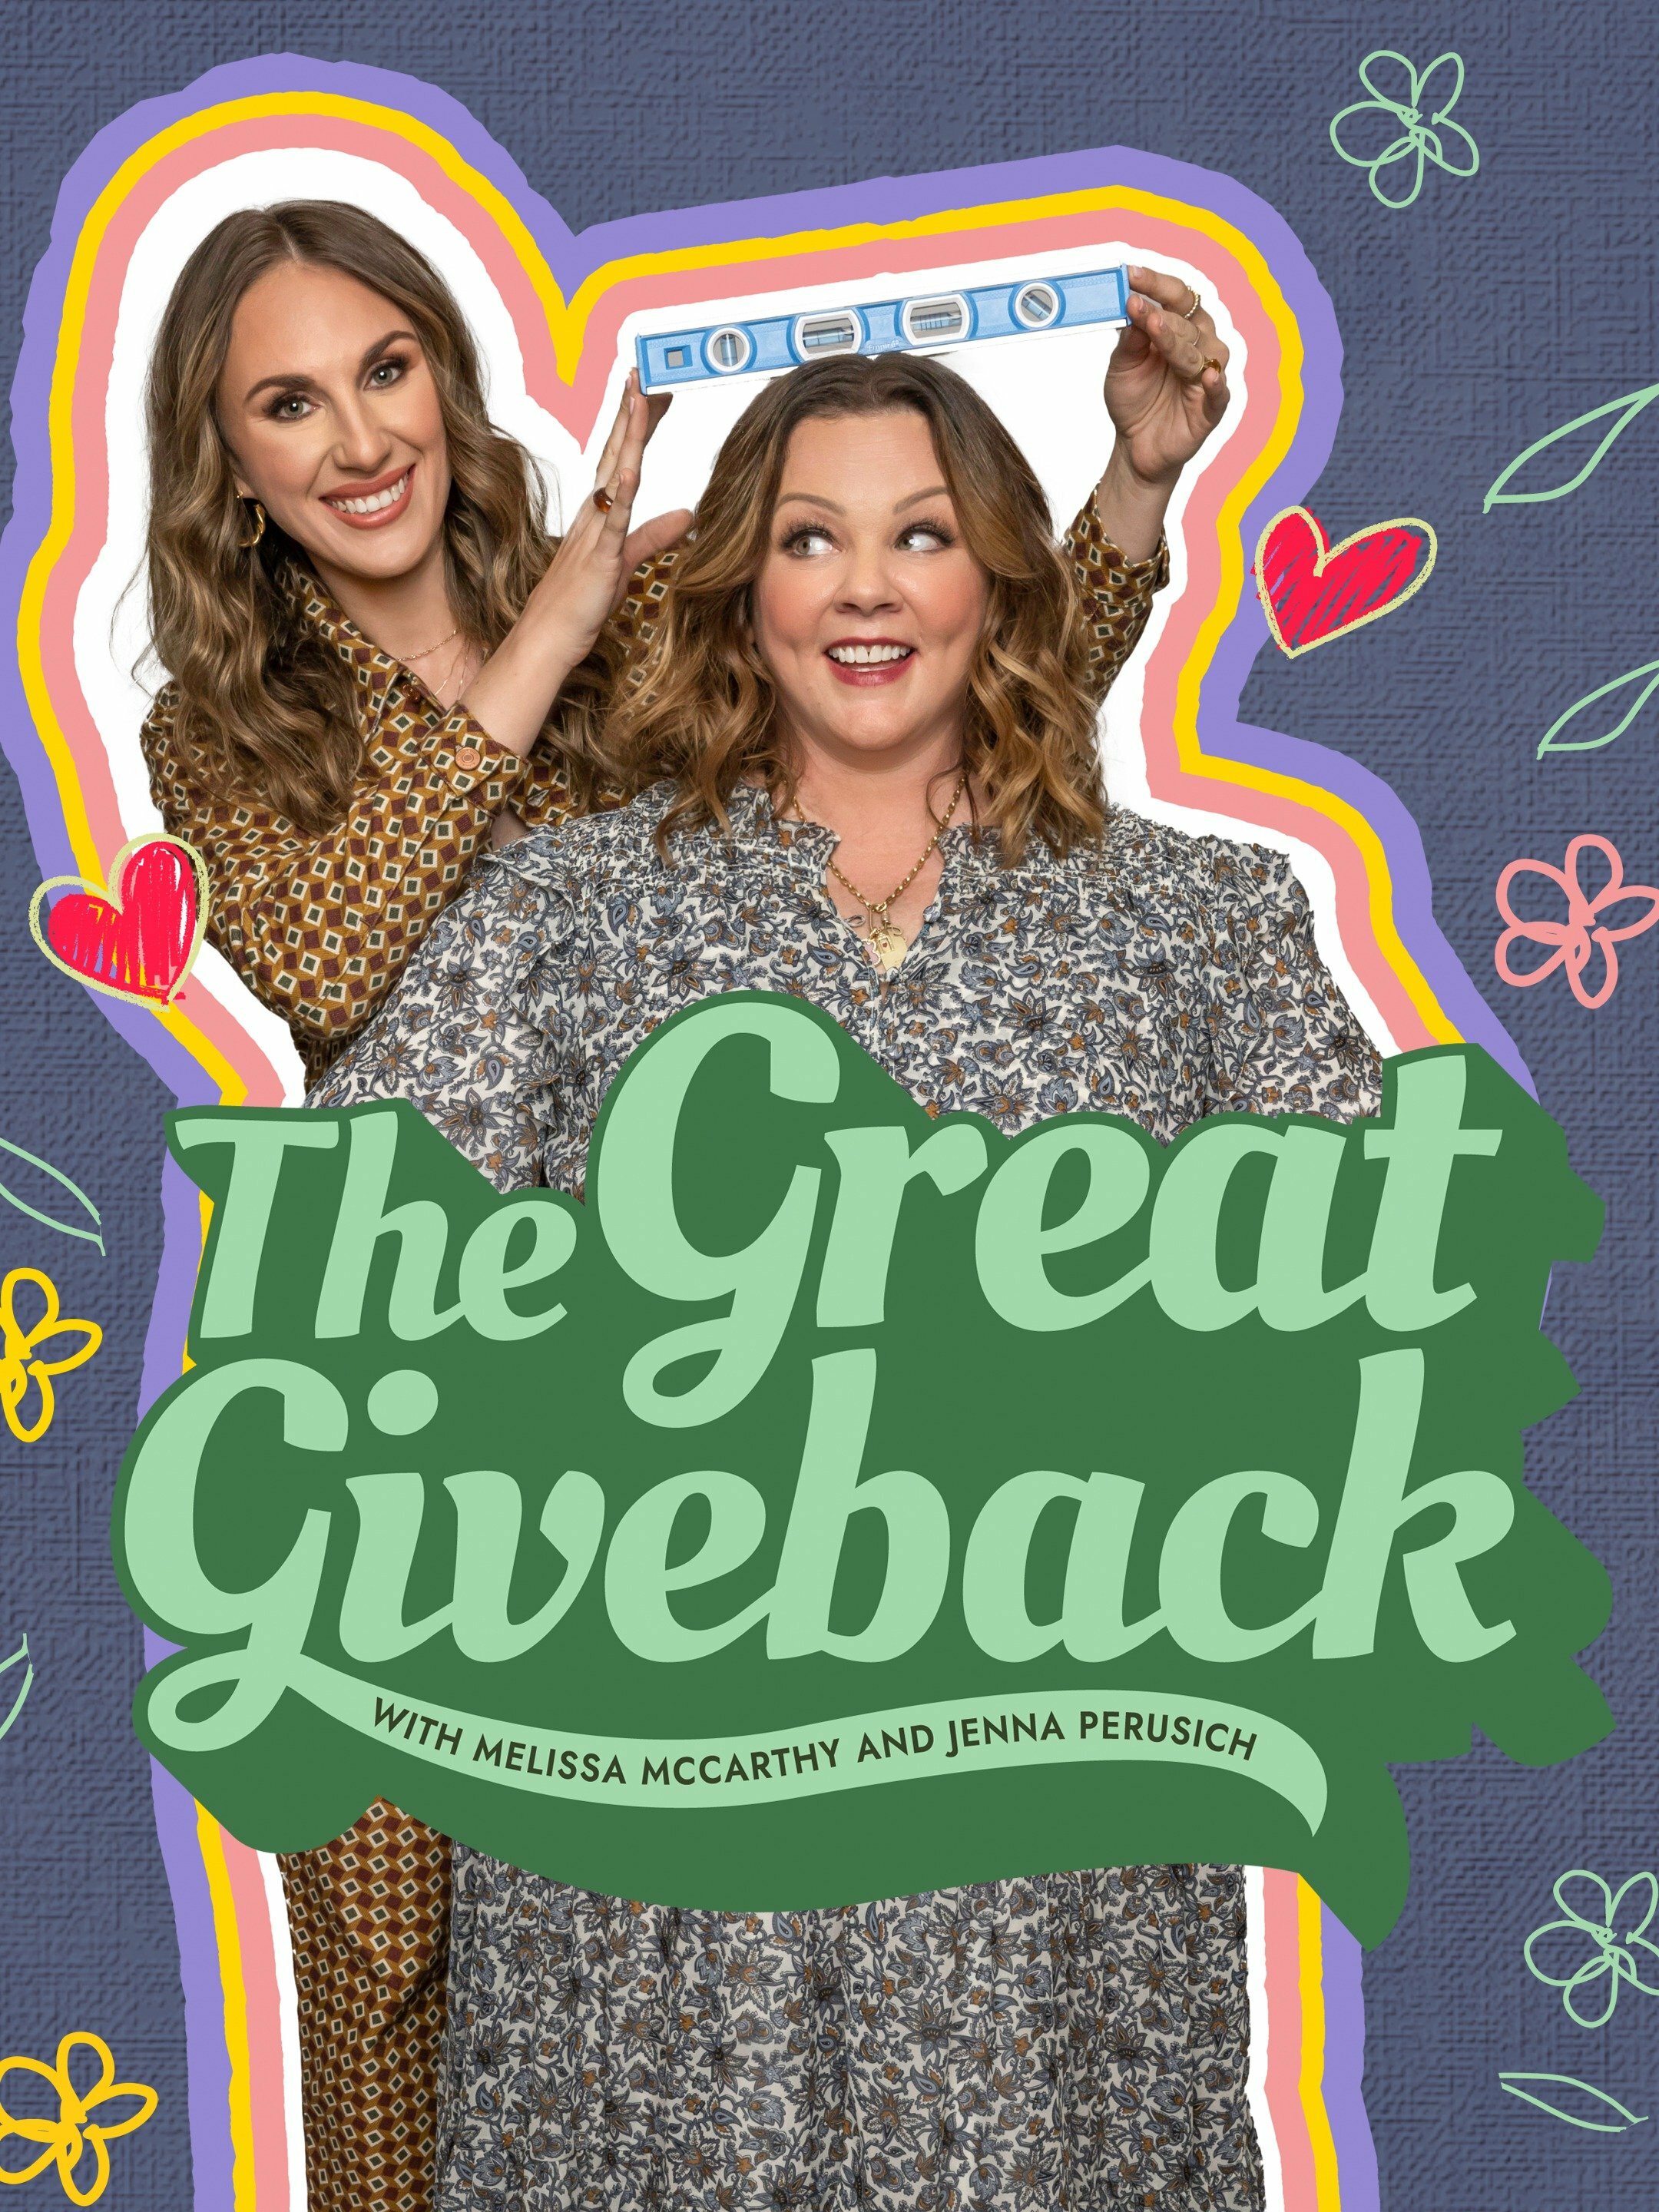 The Great Giveback with Melissa McCarthy and Jenna Perusich ne zaman